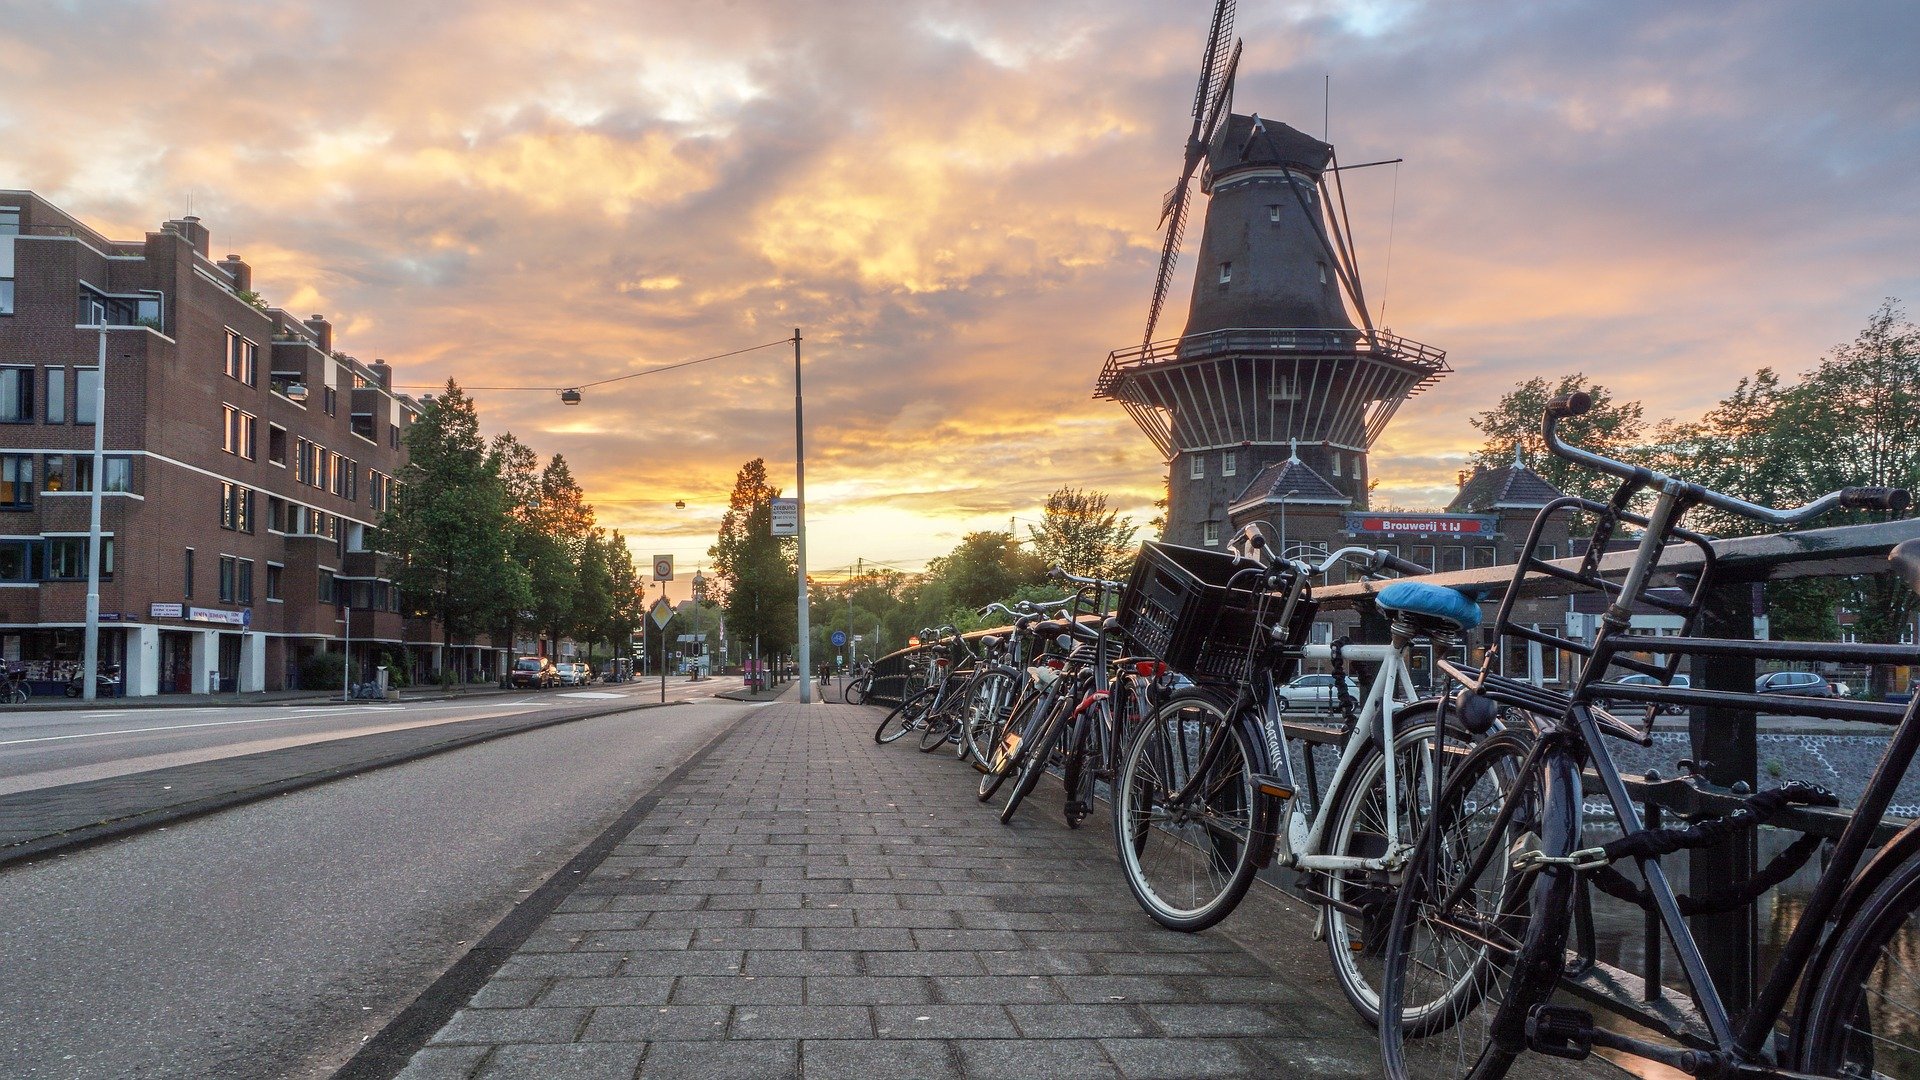 Ολλανδία: Γιατί είναι μία από τις πιο ευτυχισμένες χώρες στον πλανήτη (πίνακας + tweet)